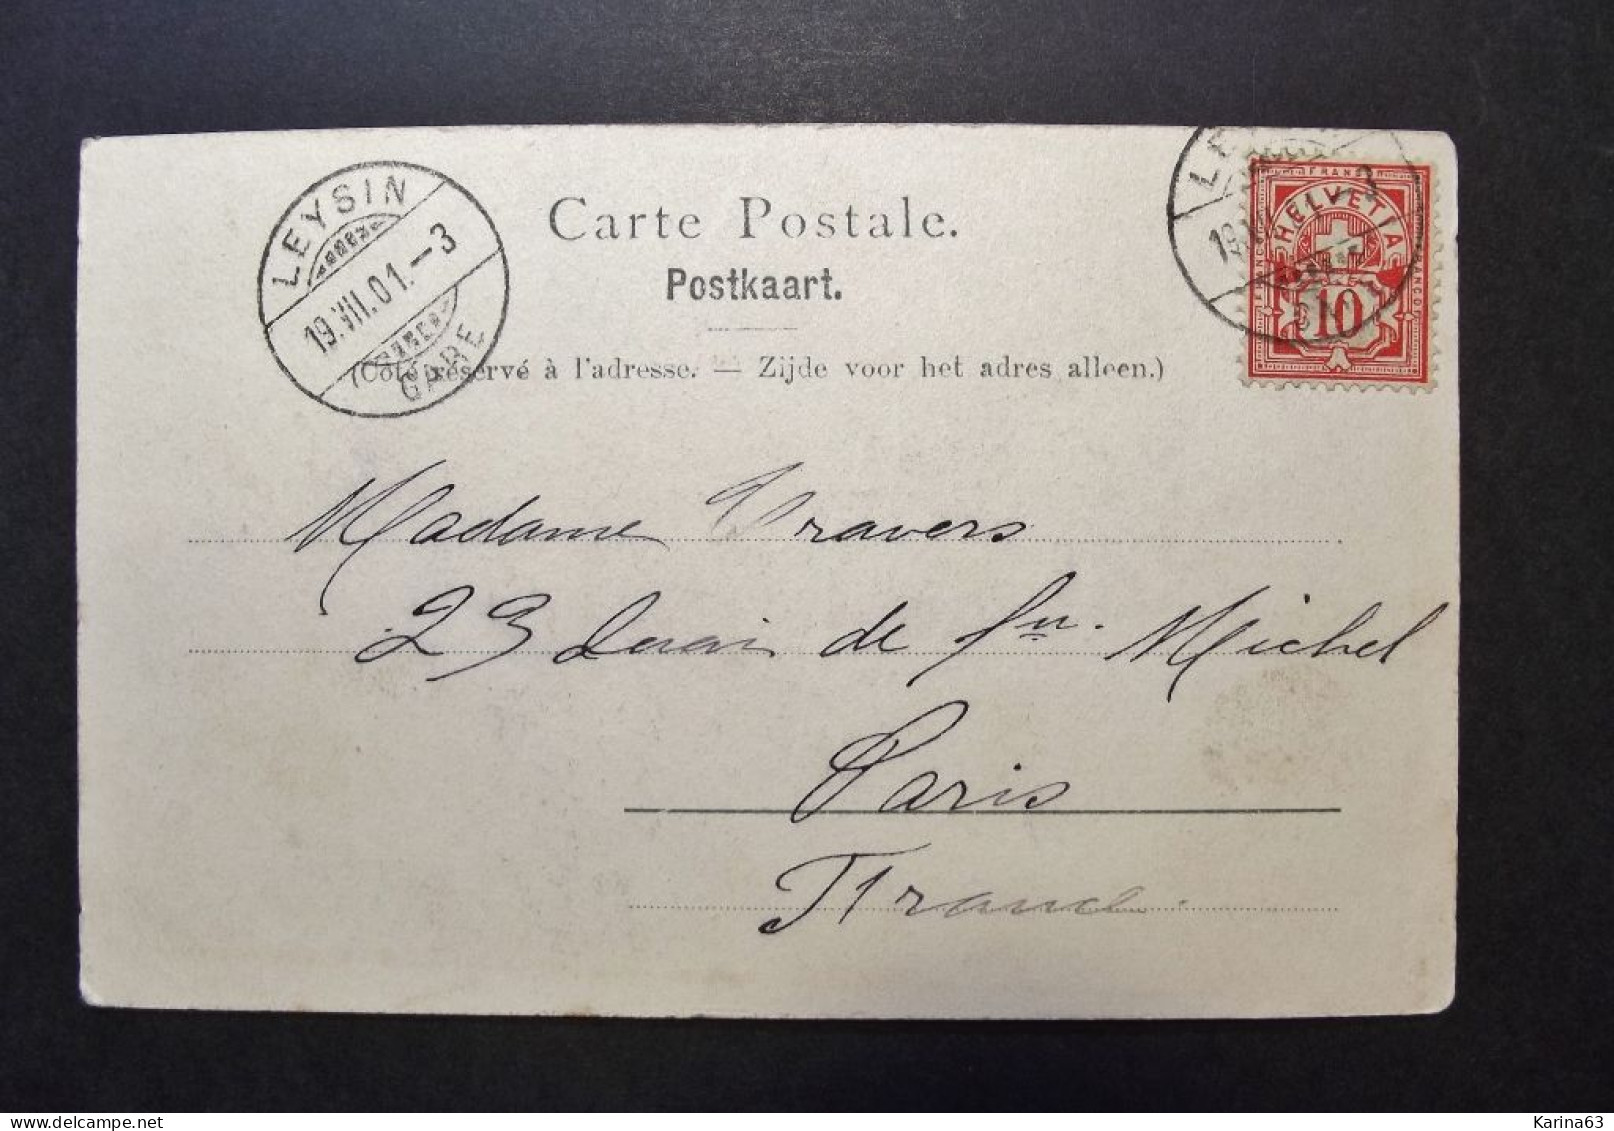 België - Belgique - CPA  - Brussel  Bruxelles - Le Palais De Justice - Used Card Obl. Leysin Vers Paris 1901 - Monumenti, Edifici